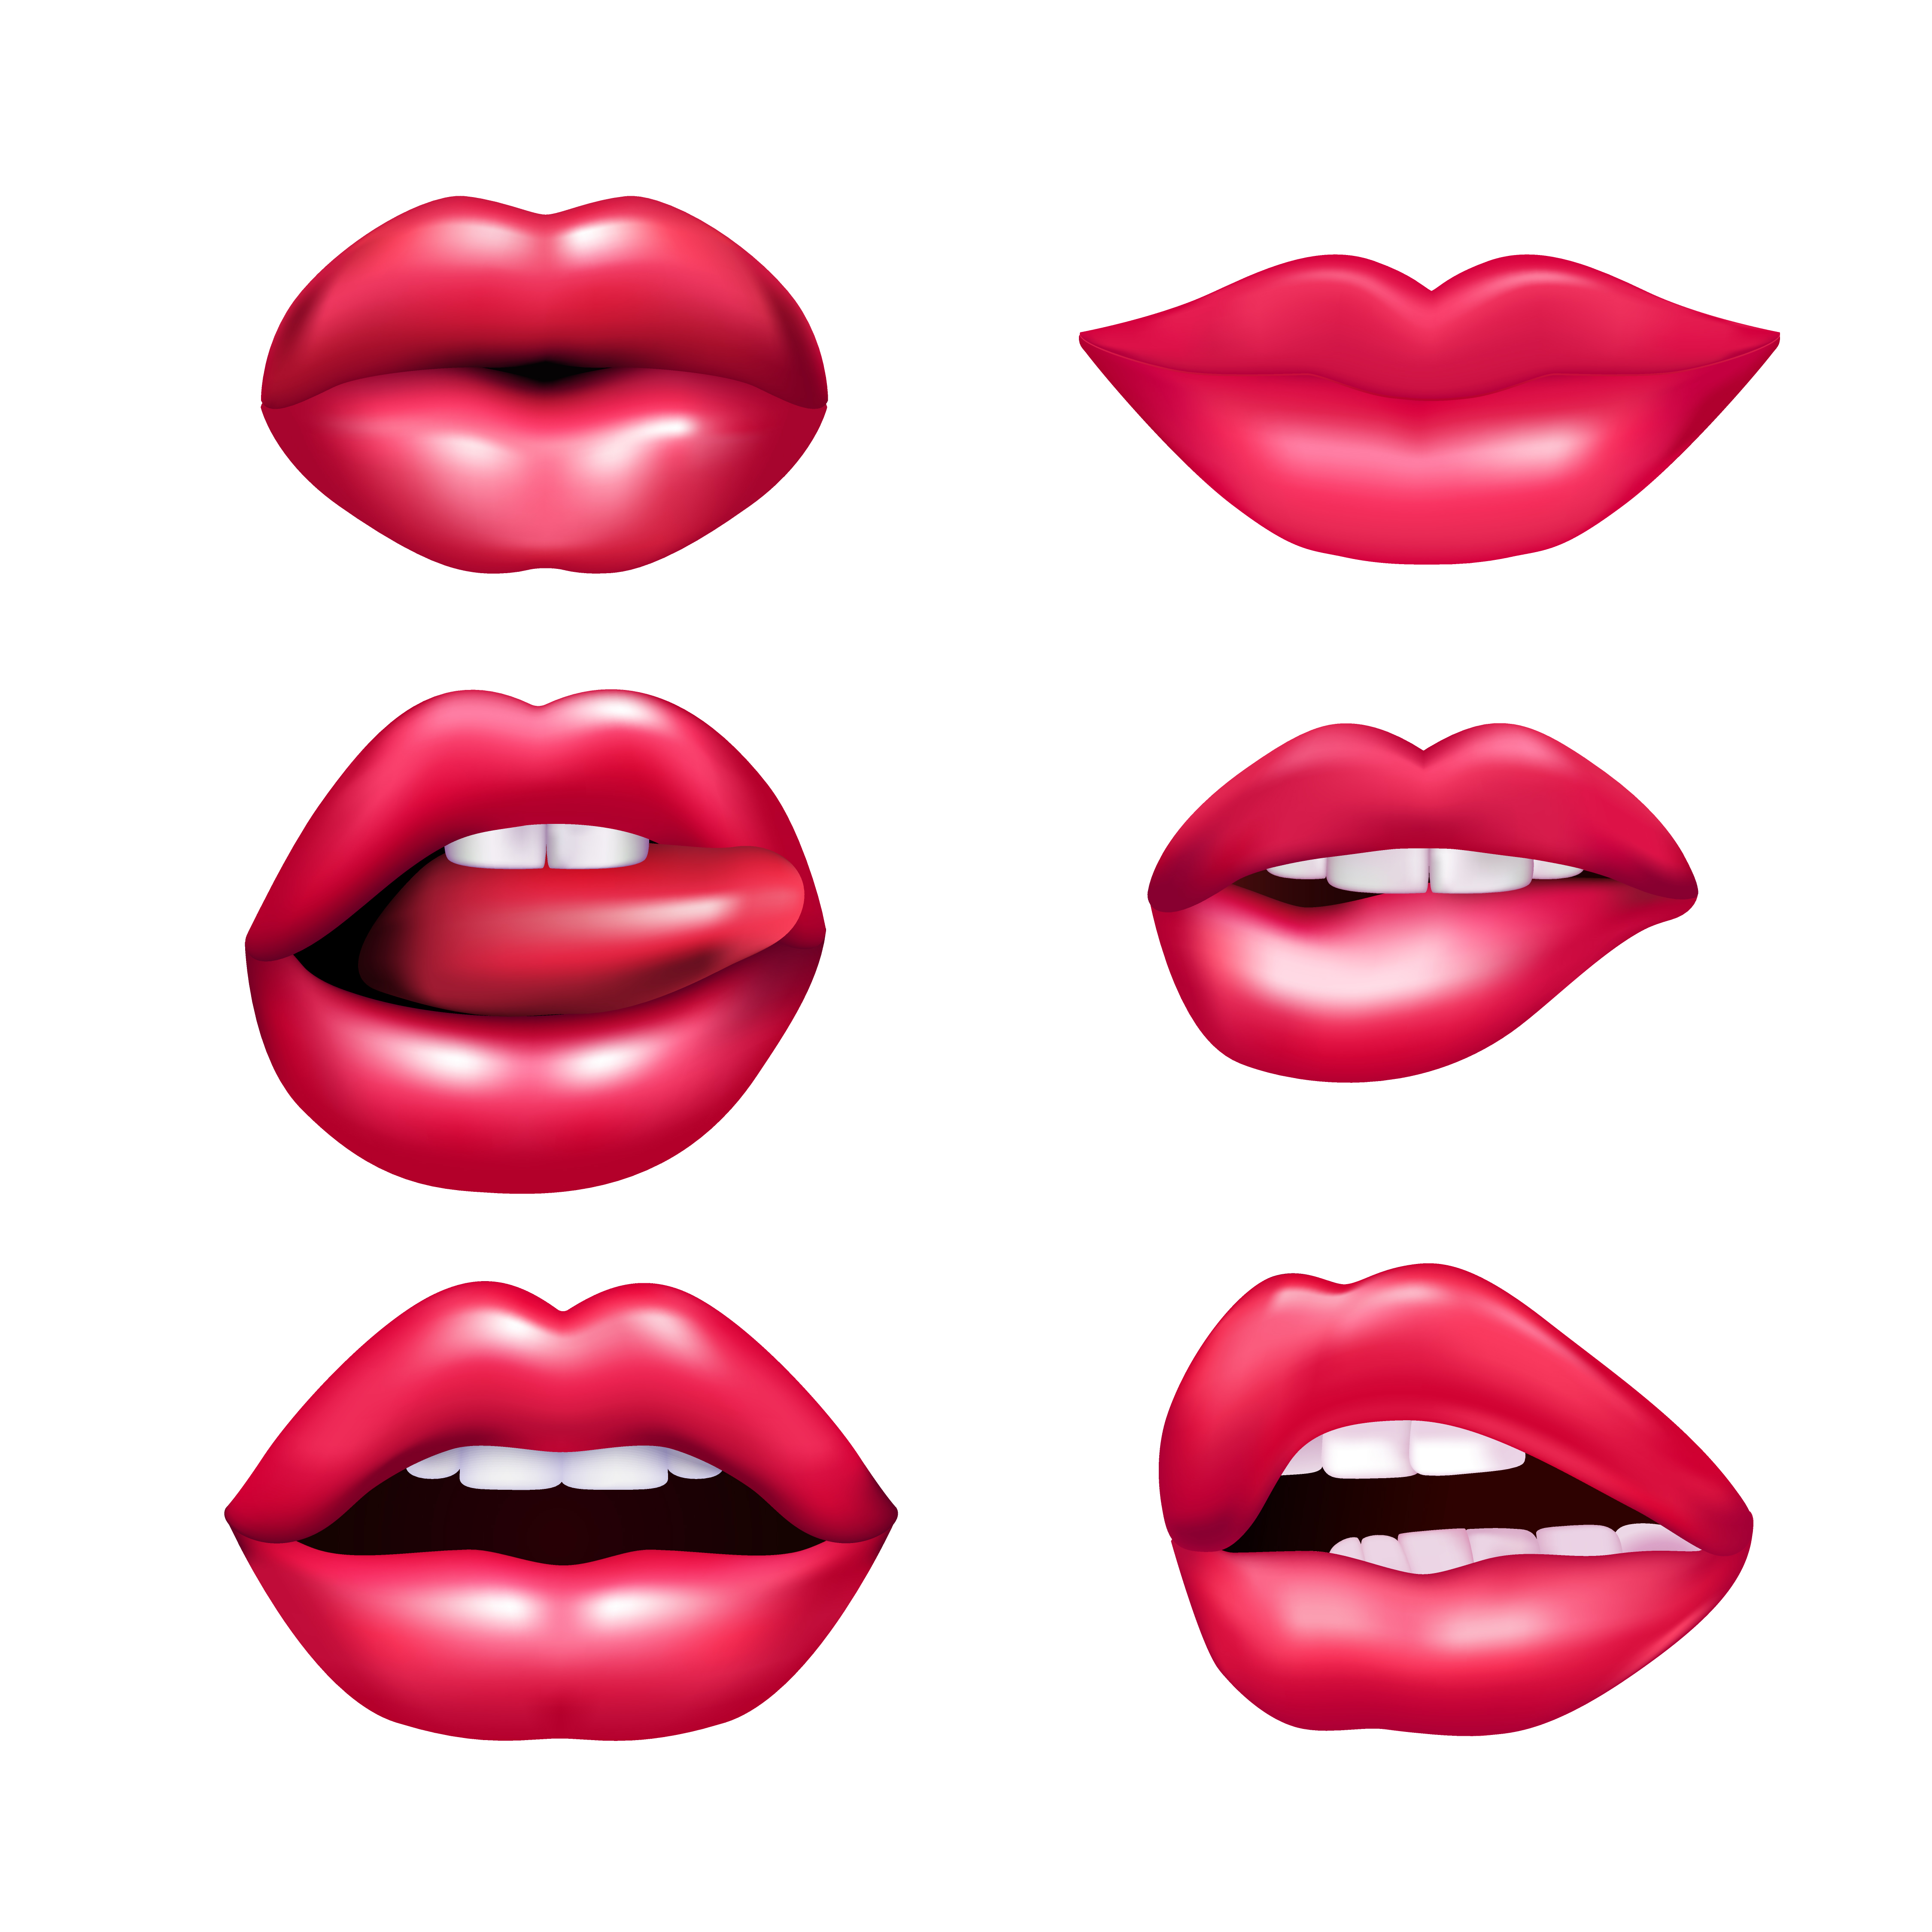 Lips Mimic Set - Download Free Vectors, Clipart Graphics & Vector Art